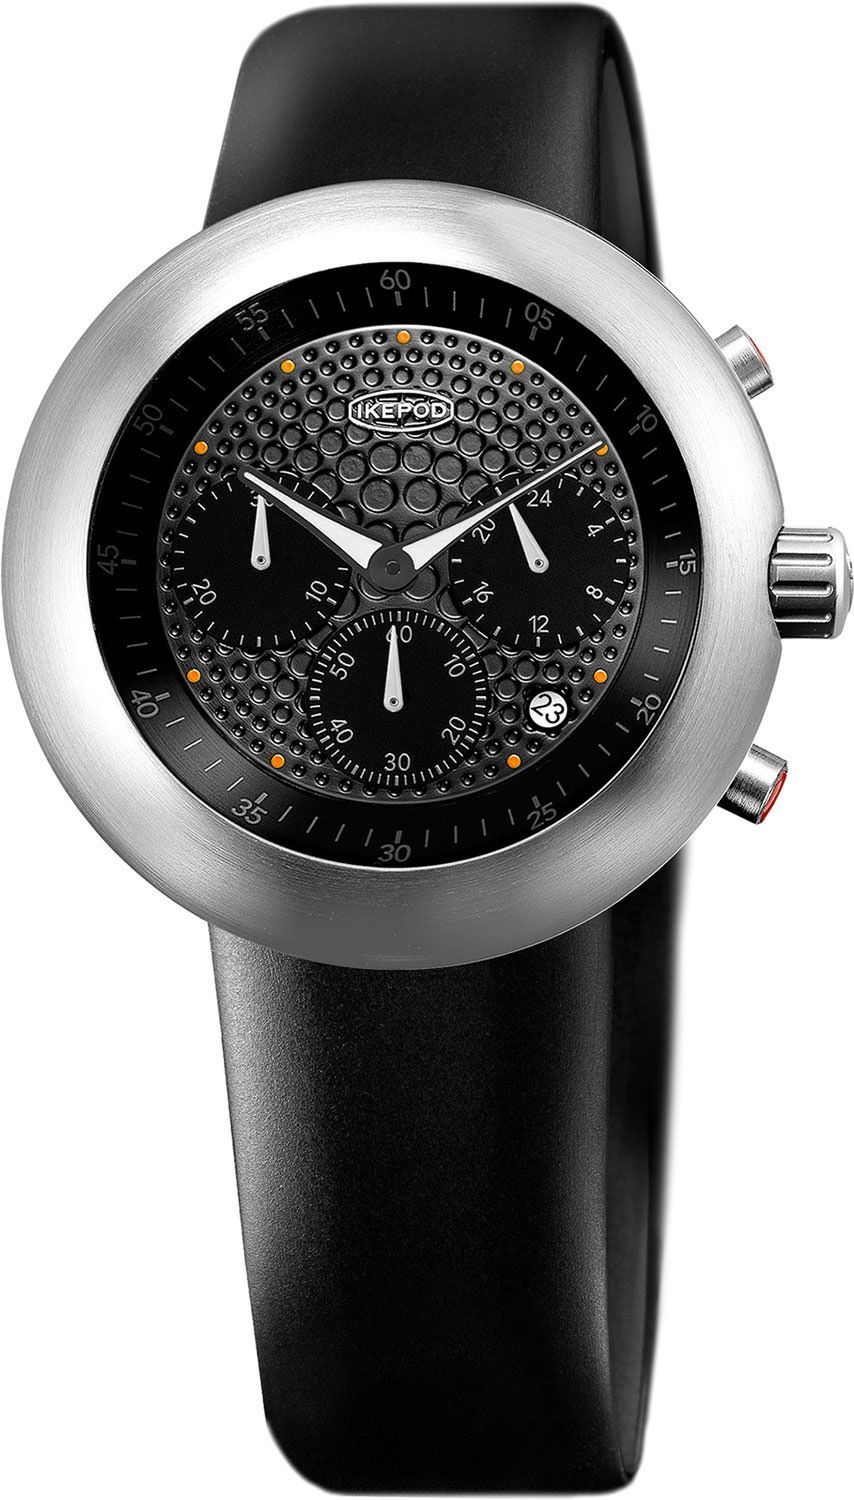 Ikepod  44 mm Watch in Black Dial For Men - 1